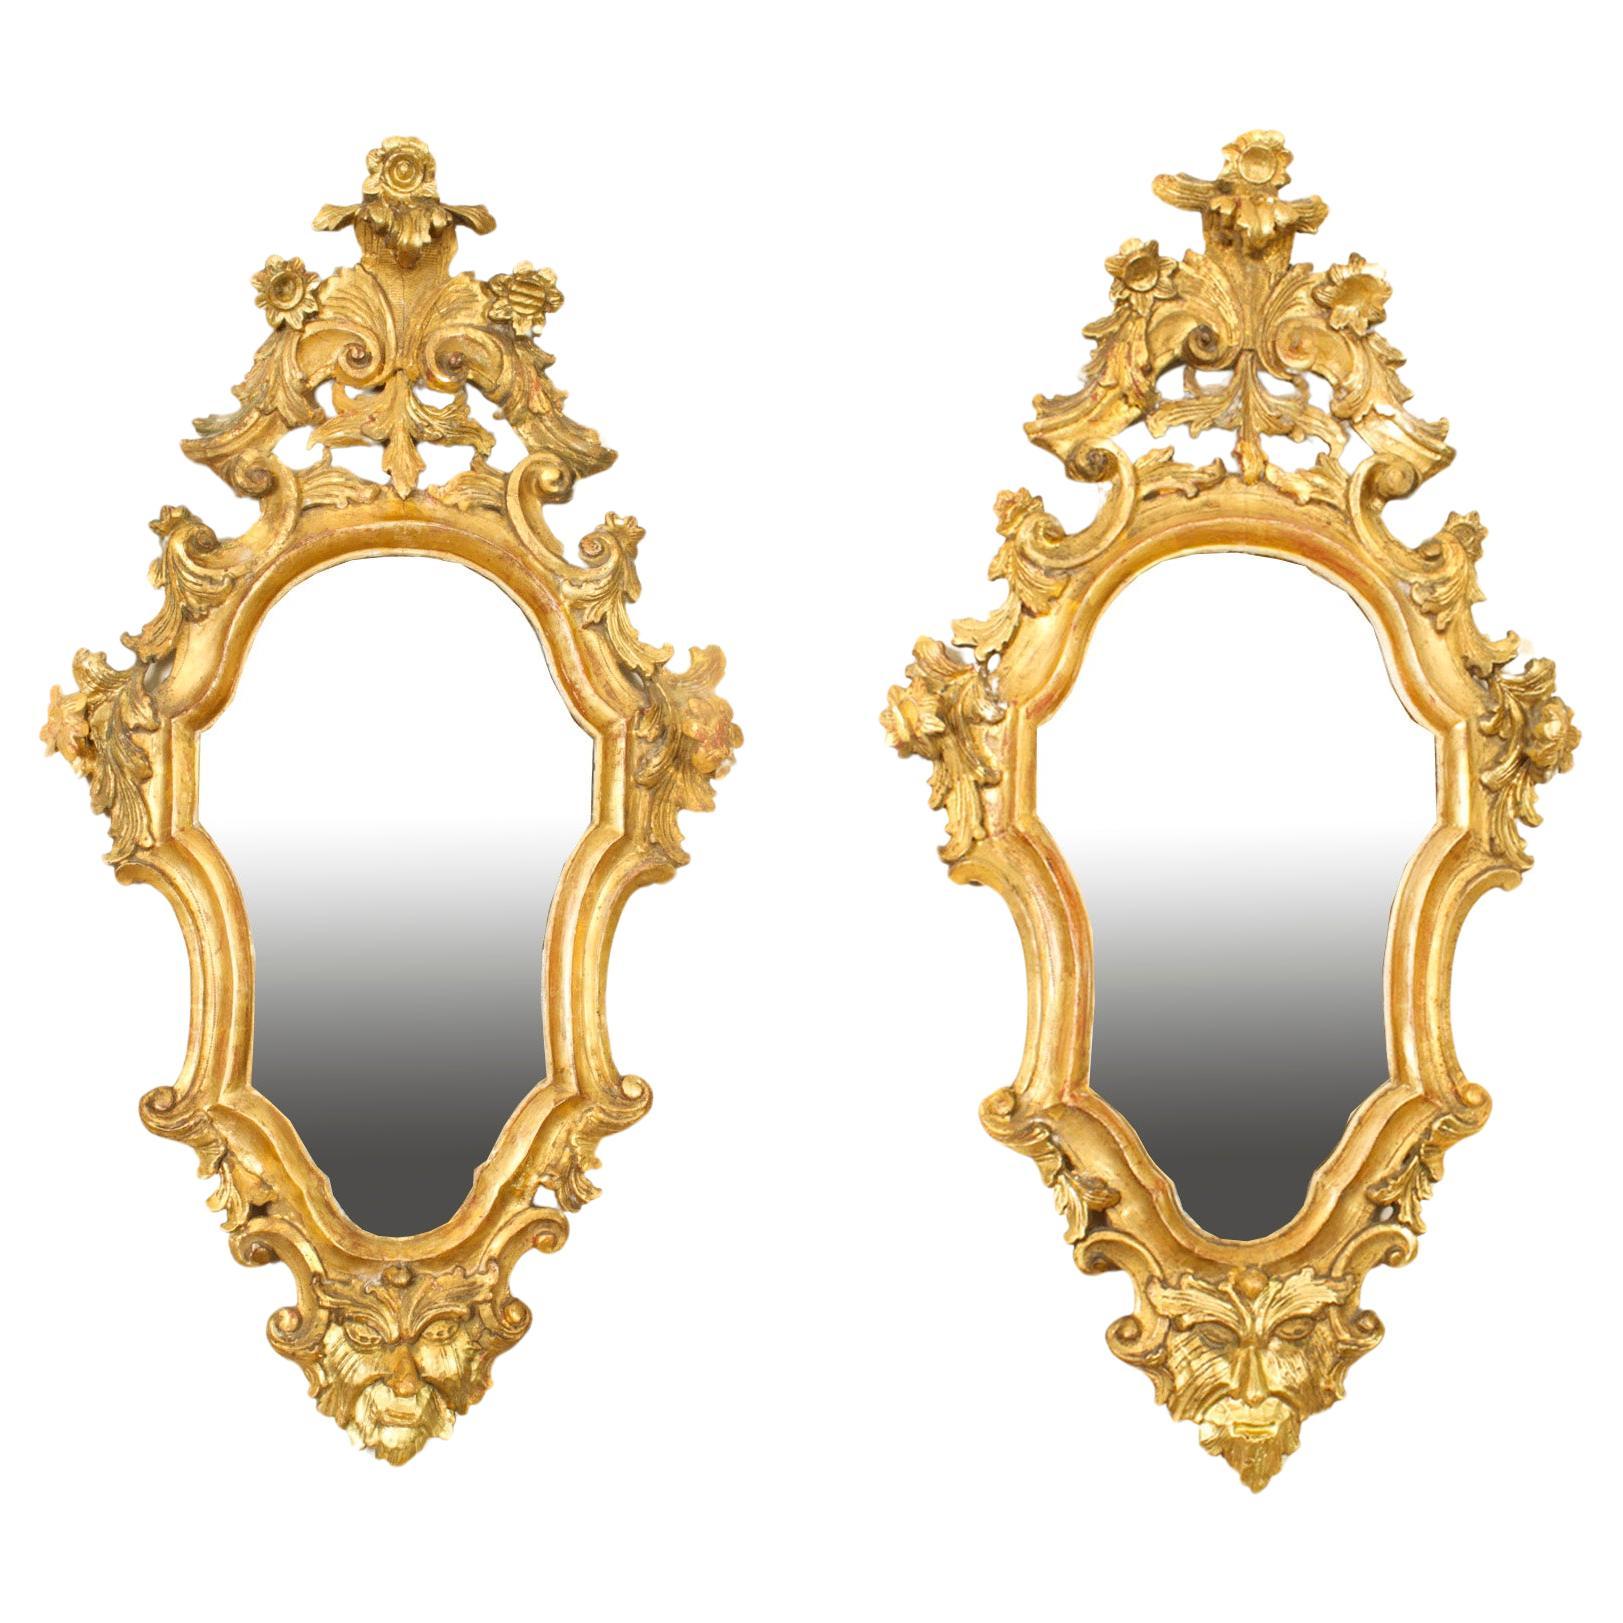 Antique Pair Florentine Rococo Giltwood Mirrors 19th Century 77x42cm